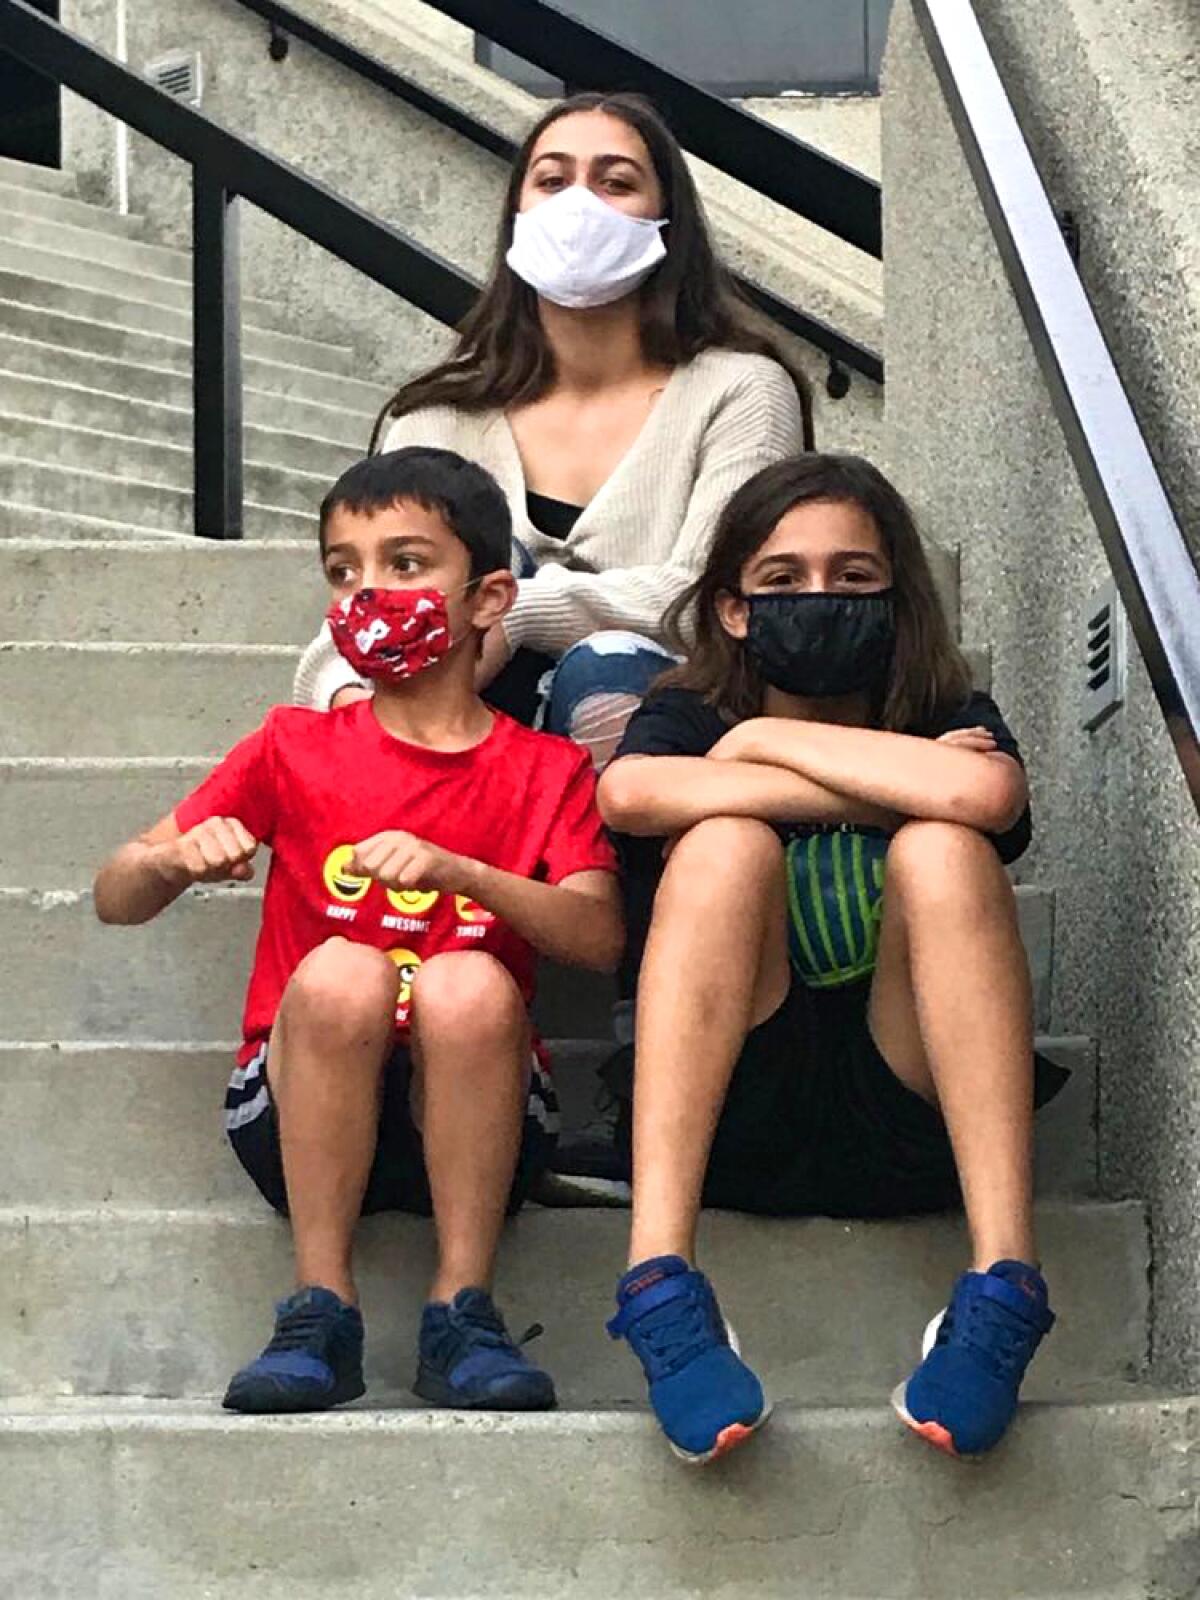 Three children wear masks and sit on steps.